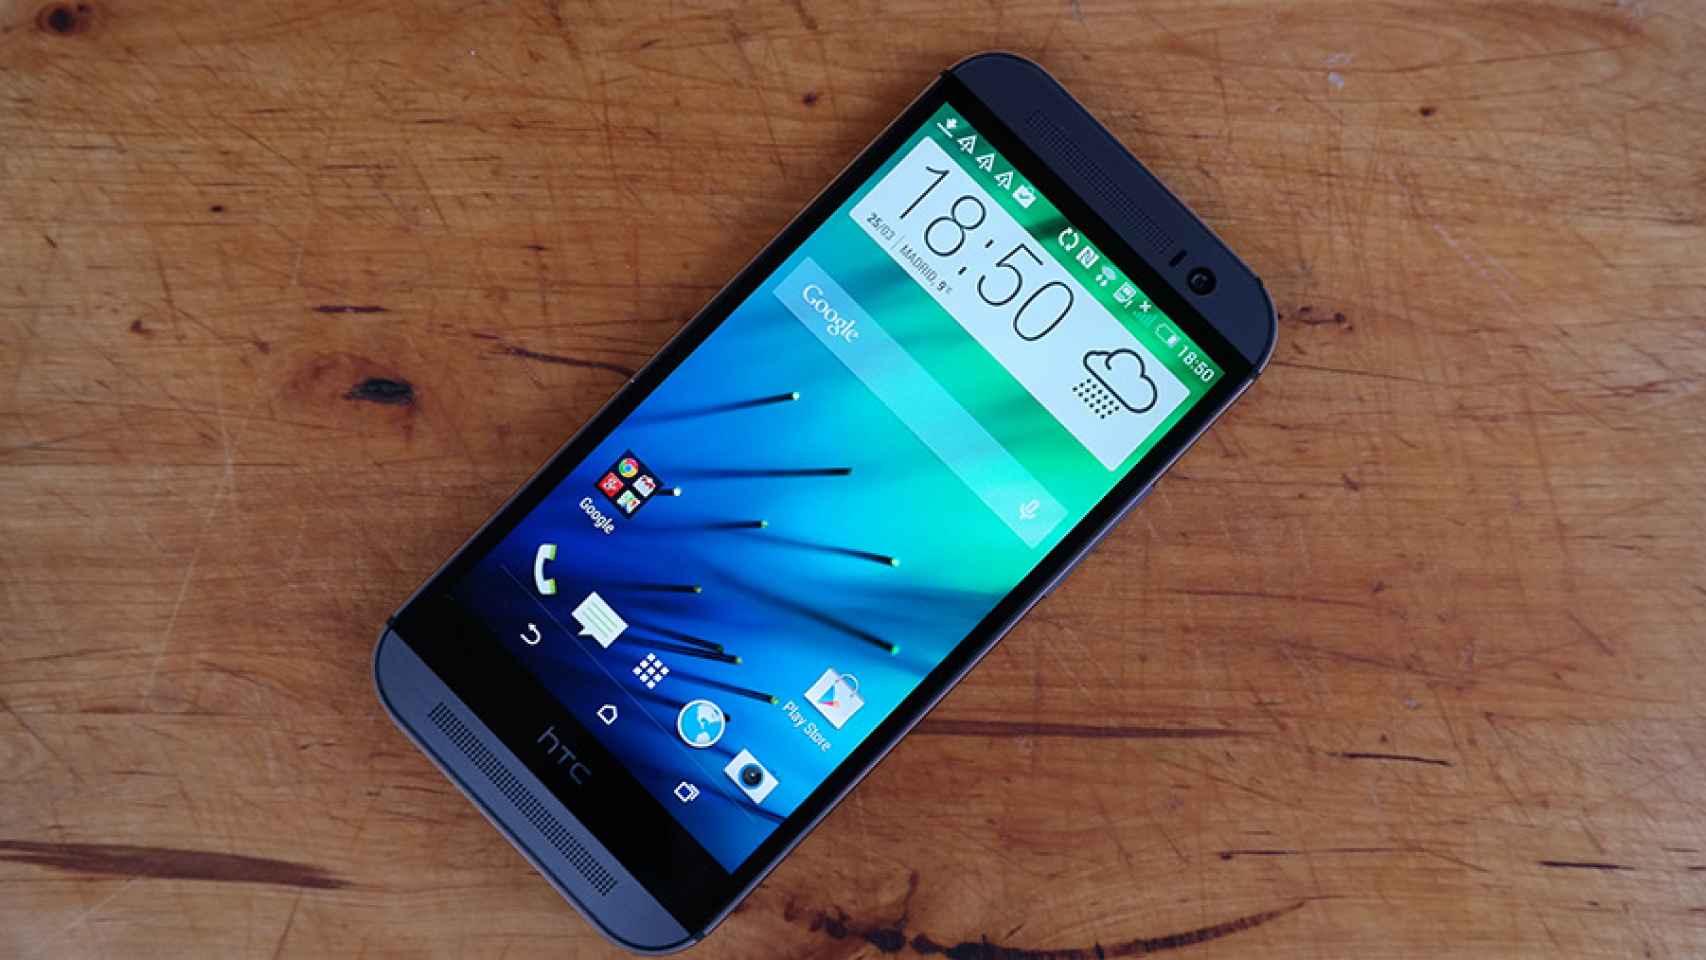 El HTC One M8 tiene la pantalla con mayor velocidad de respuesta jamás registrada